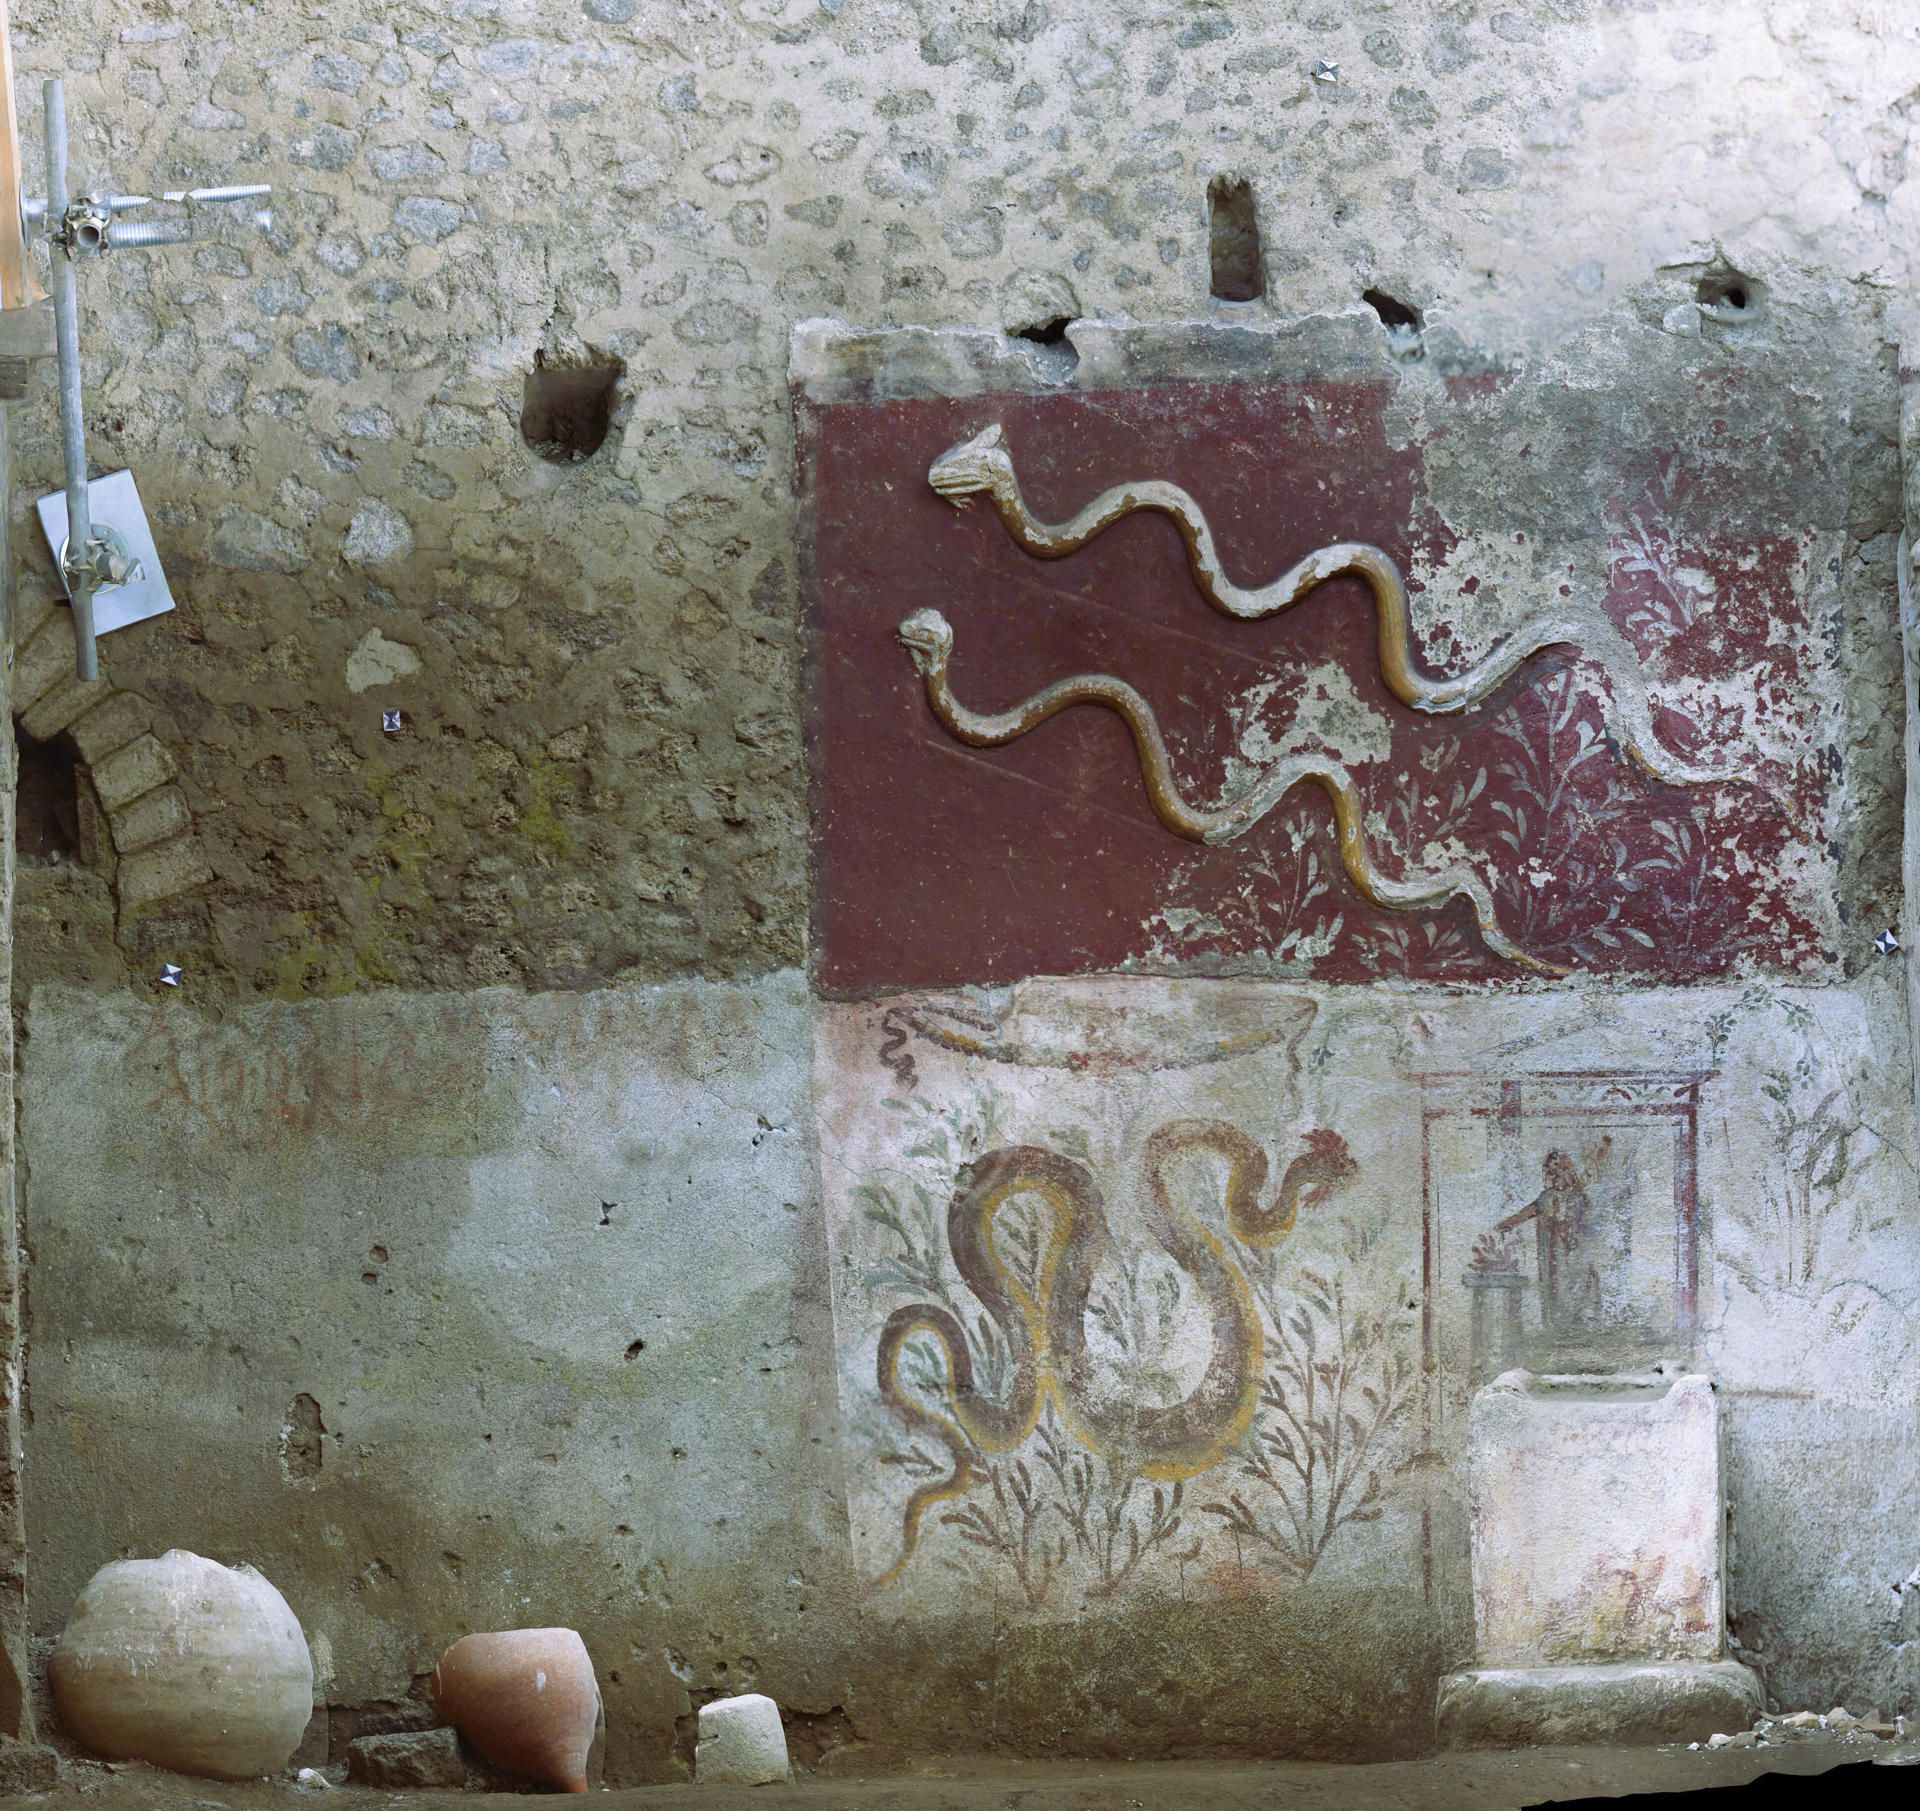 Imagen cedida por el Parque Arqueológico de Pompeya. EFE/ SOLO USO EDITORIAL/SOLO DISPONIBLE PARA ILUSTRAR LA NOTICIA QUE ACOMPAÑA (CRÉDITO OBLIGATORIO)
